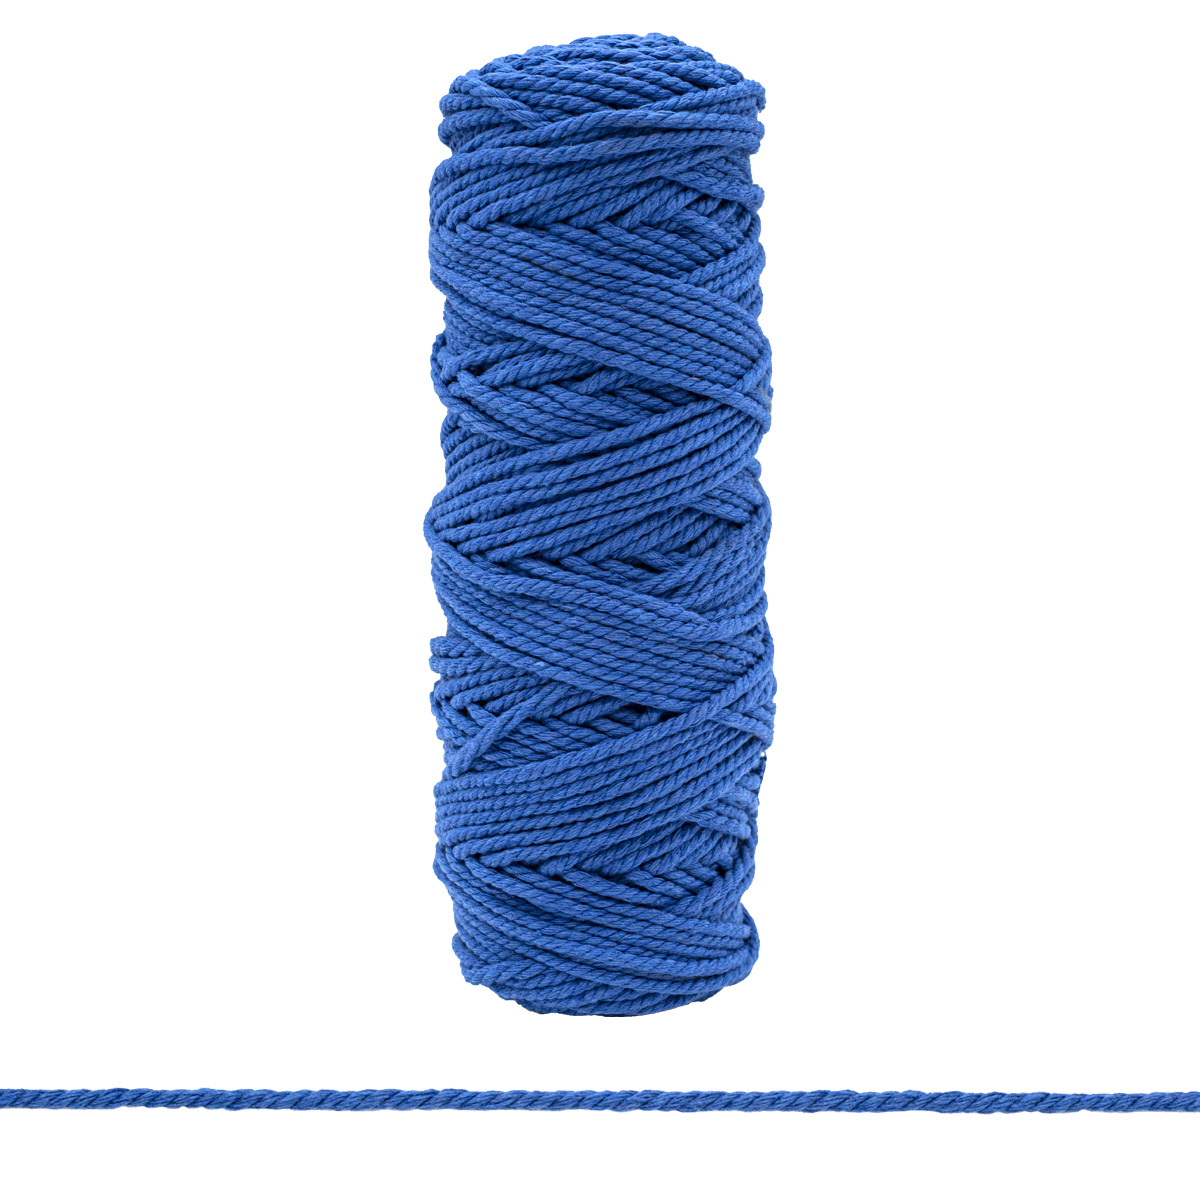 Шнур х б. Шнур витой 3мм*18,29м, Айрис. Argyle Knit шнур хлопковый. Хб шнур синий.